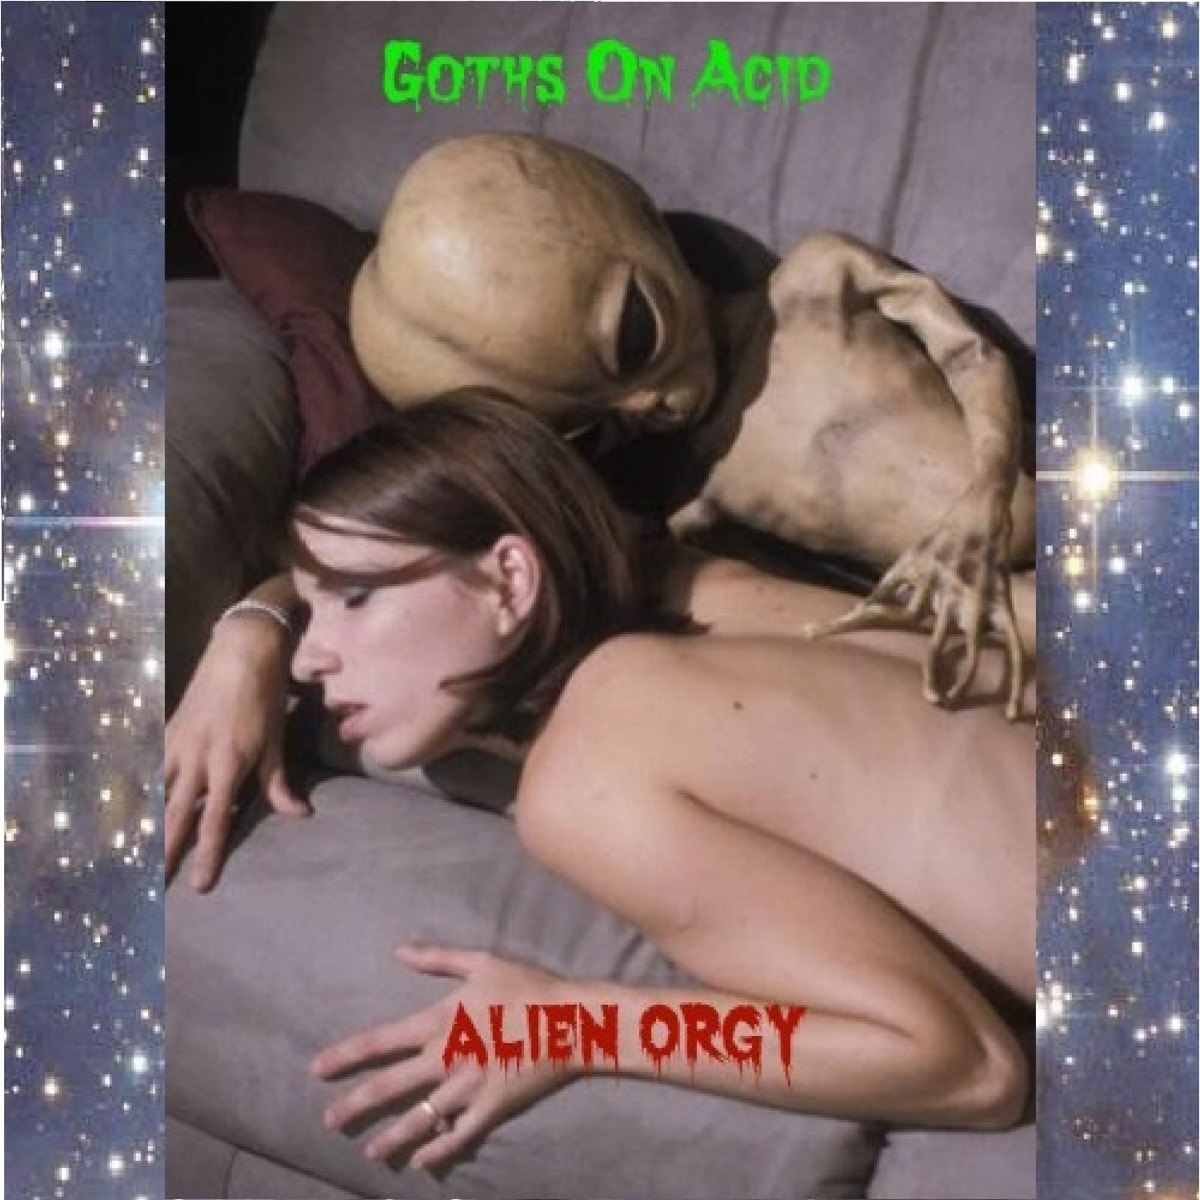 Alien orgy